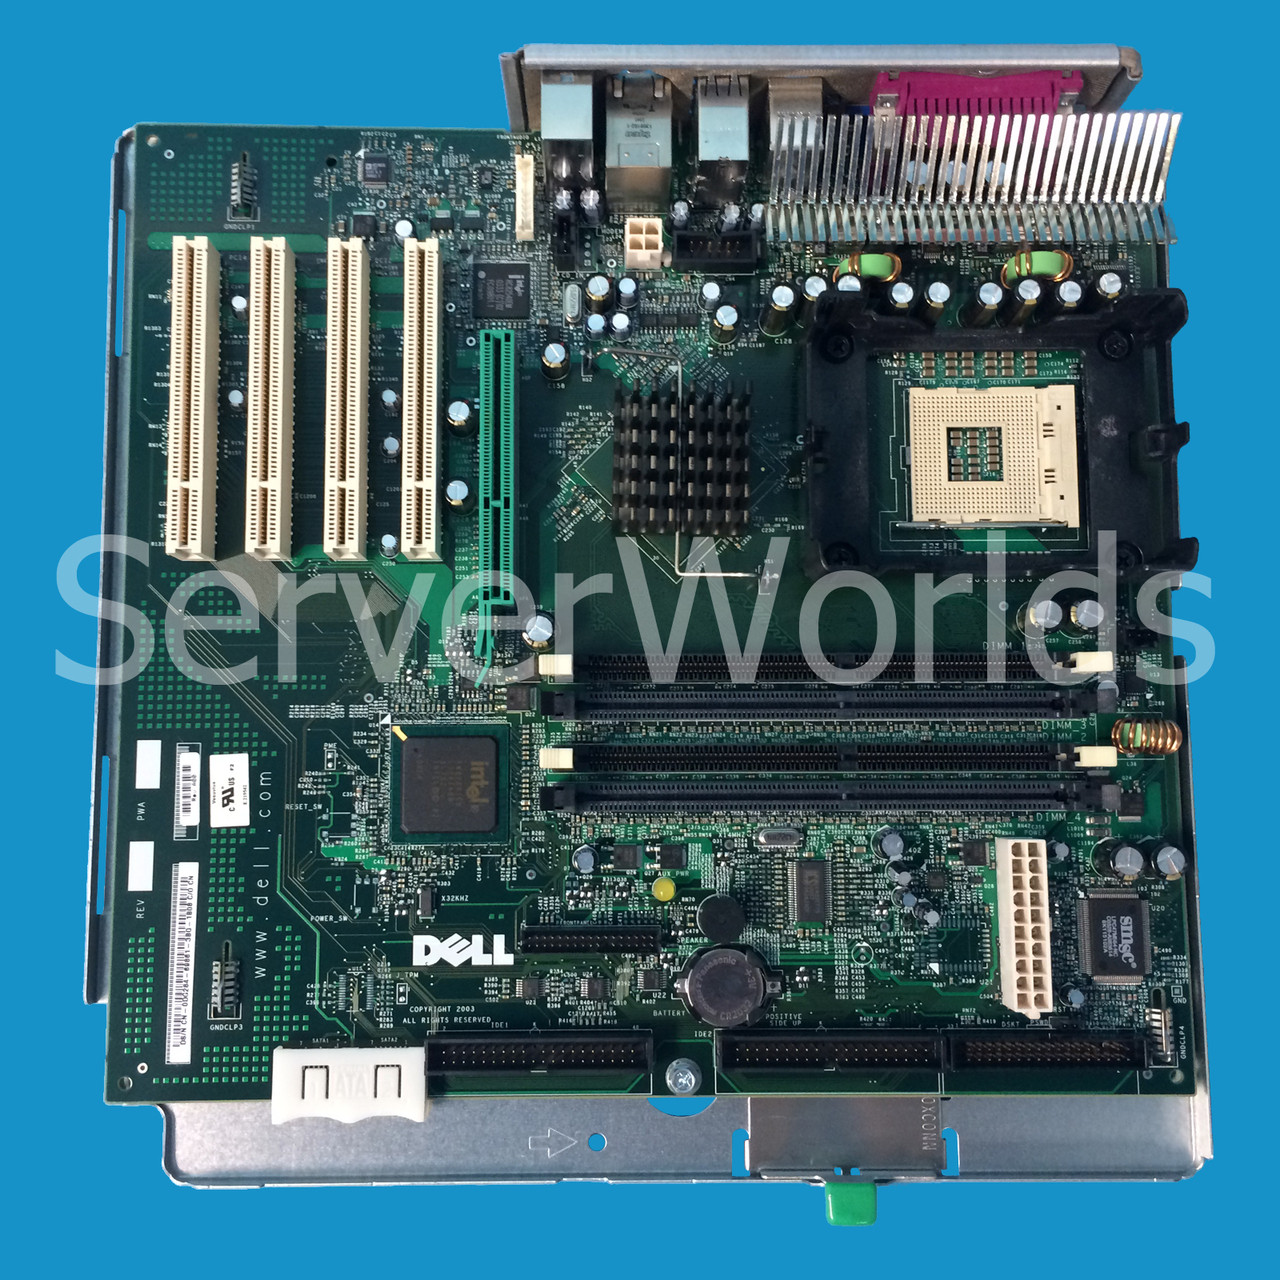 Dell DG284 Optiplex GX270 System Board SMT